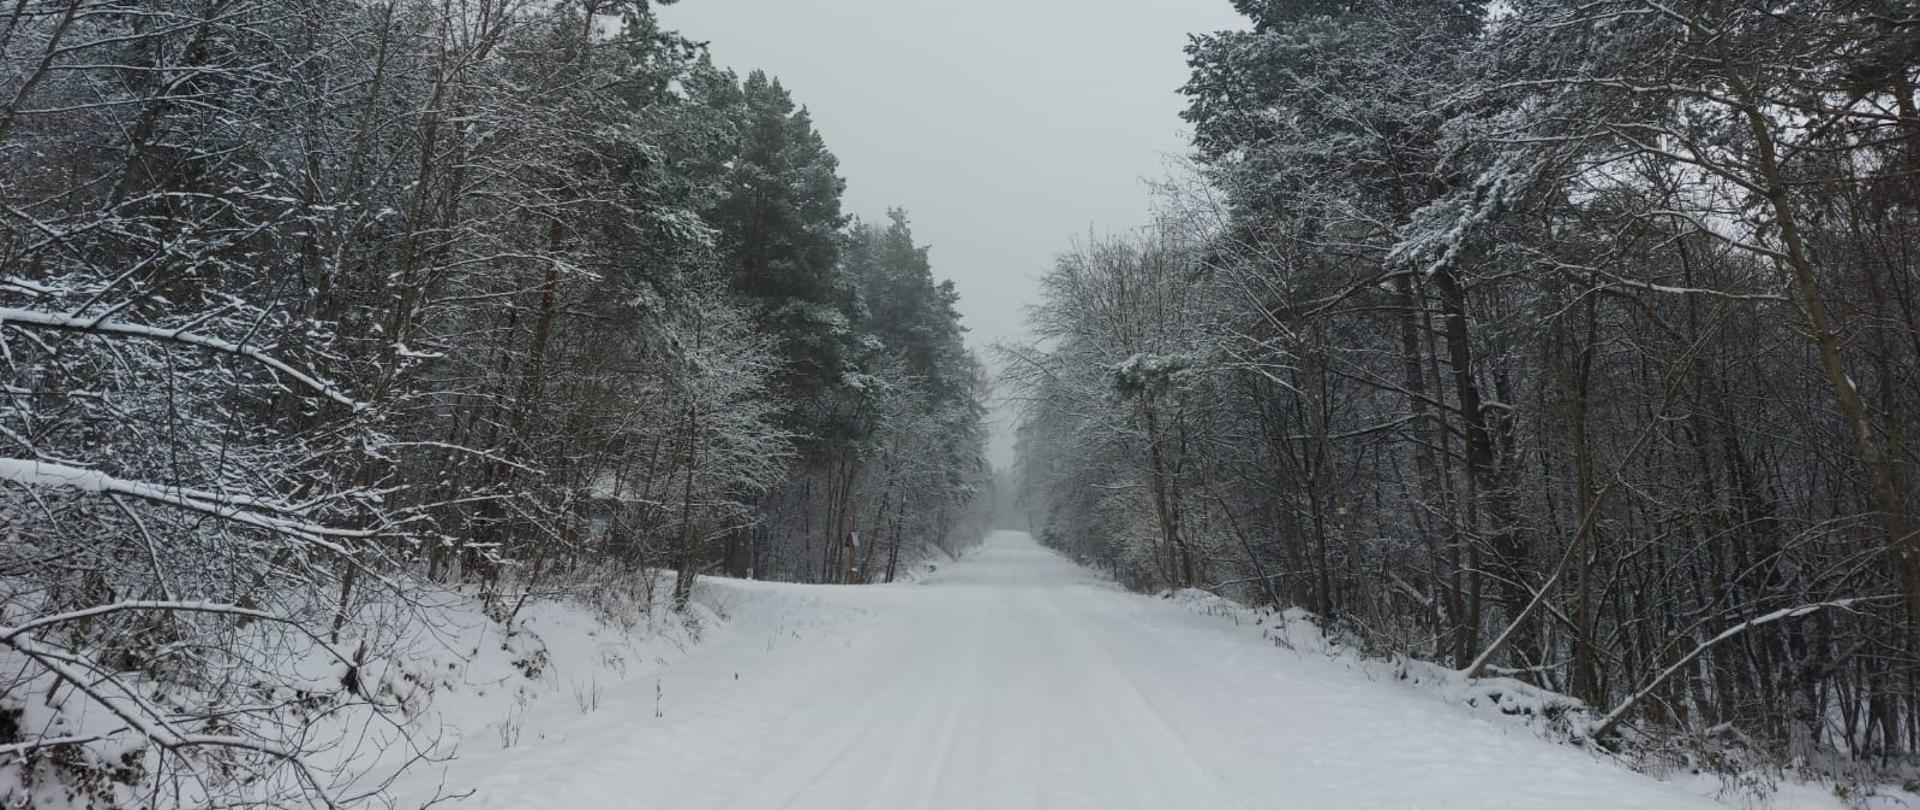 droga Desznica - Świątkowa Wielka w śnieżnej szacie